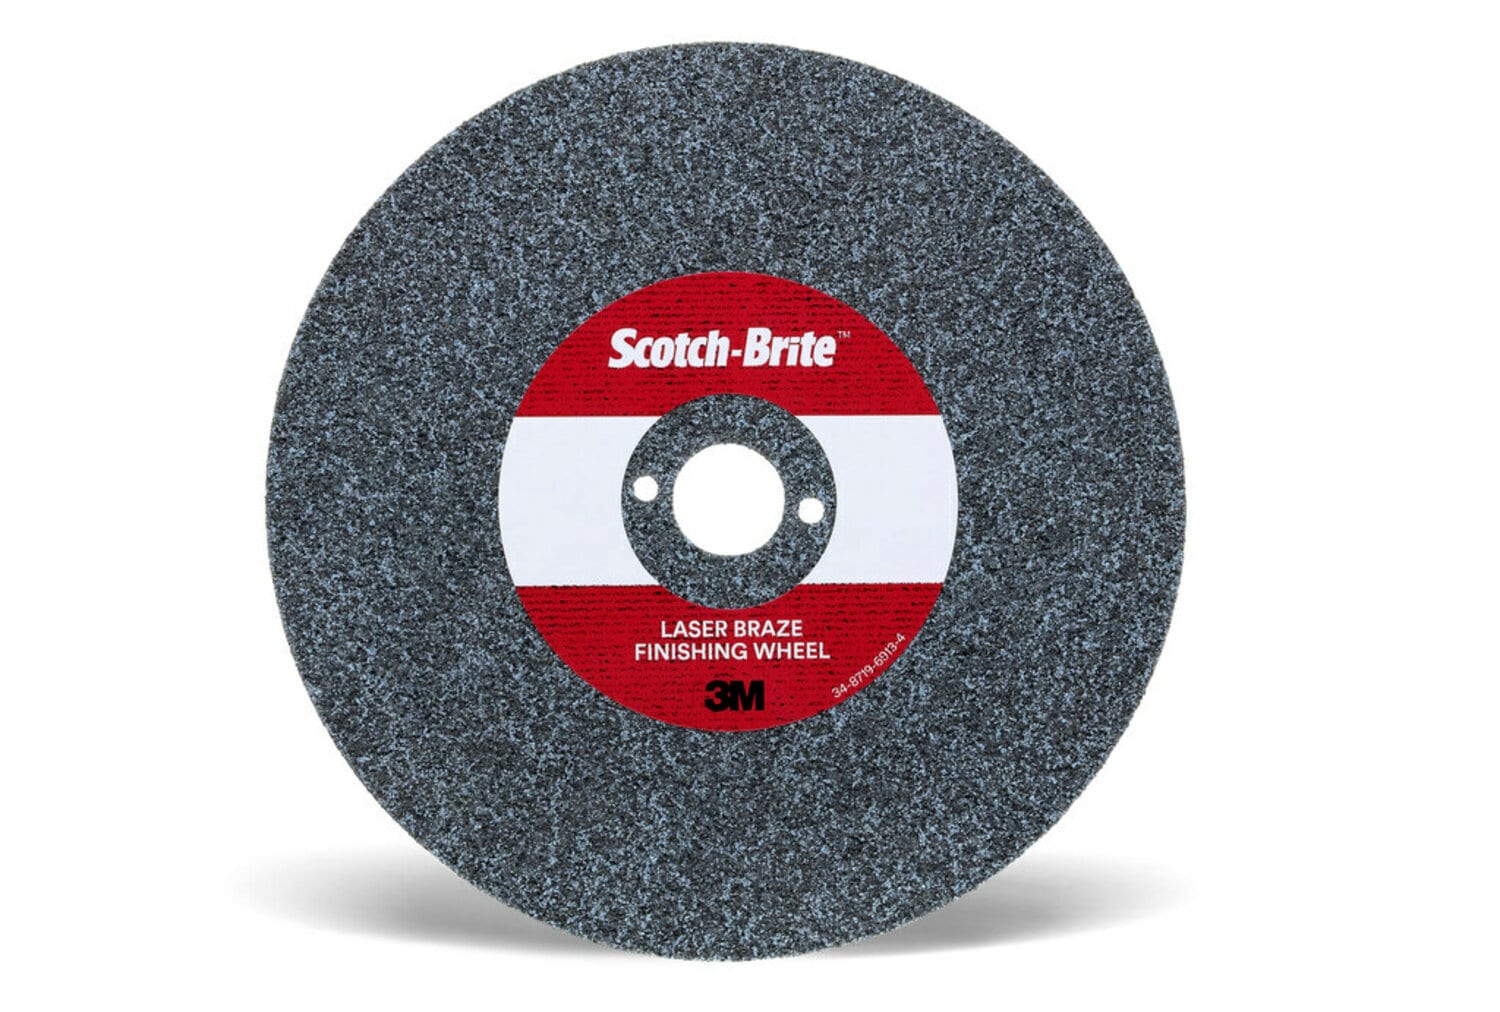 7100115834 - Scotch-Brite Laser Braze Finishing Wheel, 8 in x 3.0mm x 1 in, 10
ea/Case